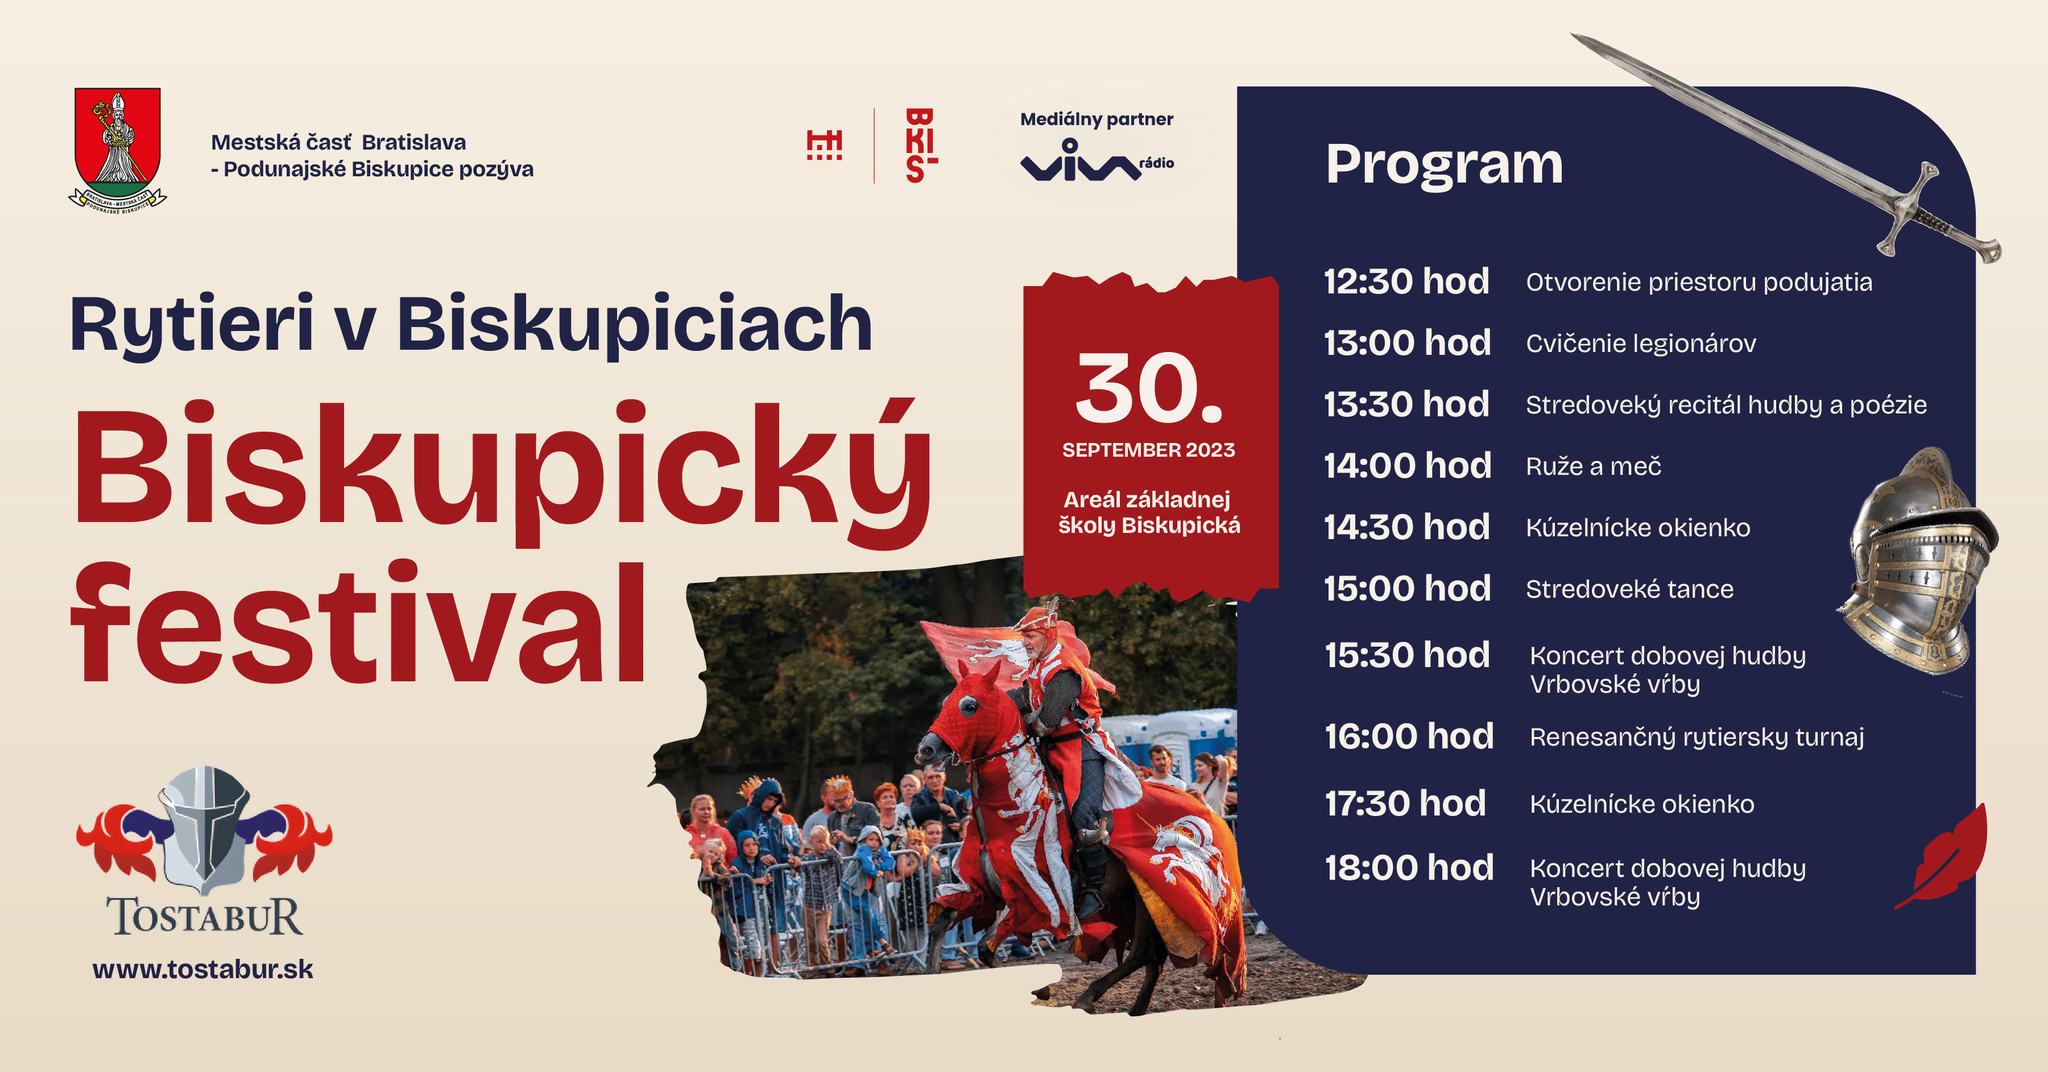 Biskupický festival 2023 Podunajské Biskupice - Rytierí v Biskupiciach